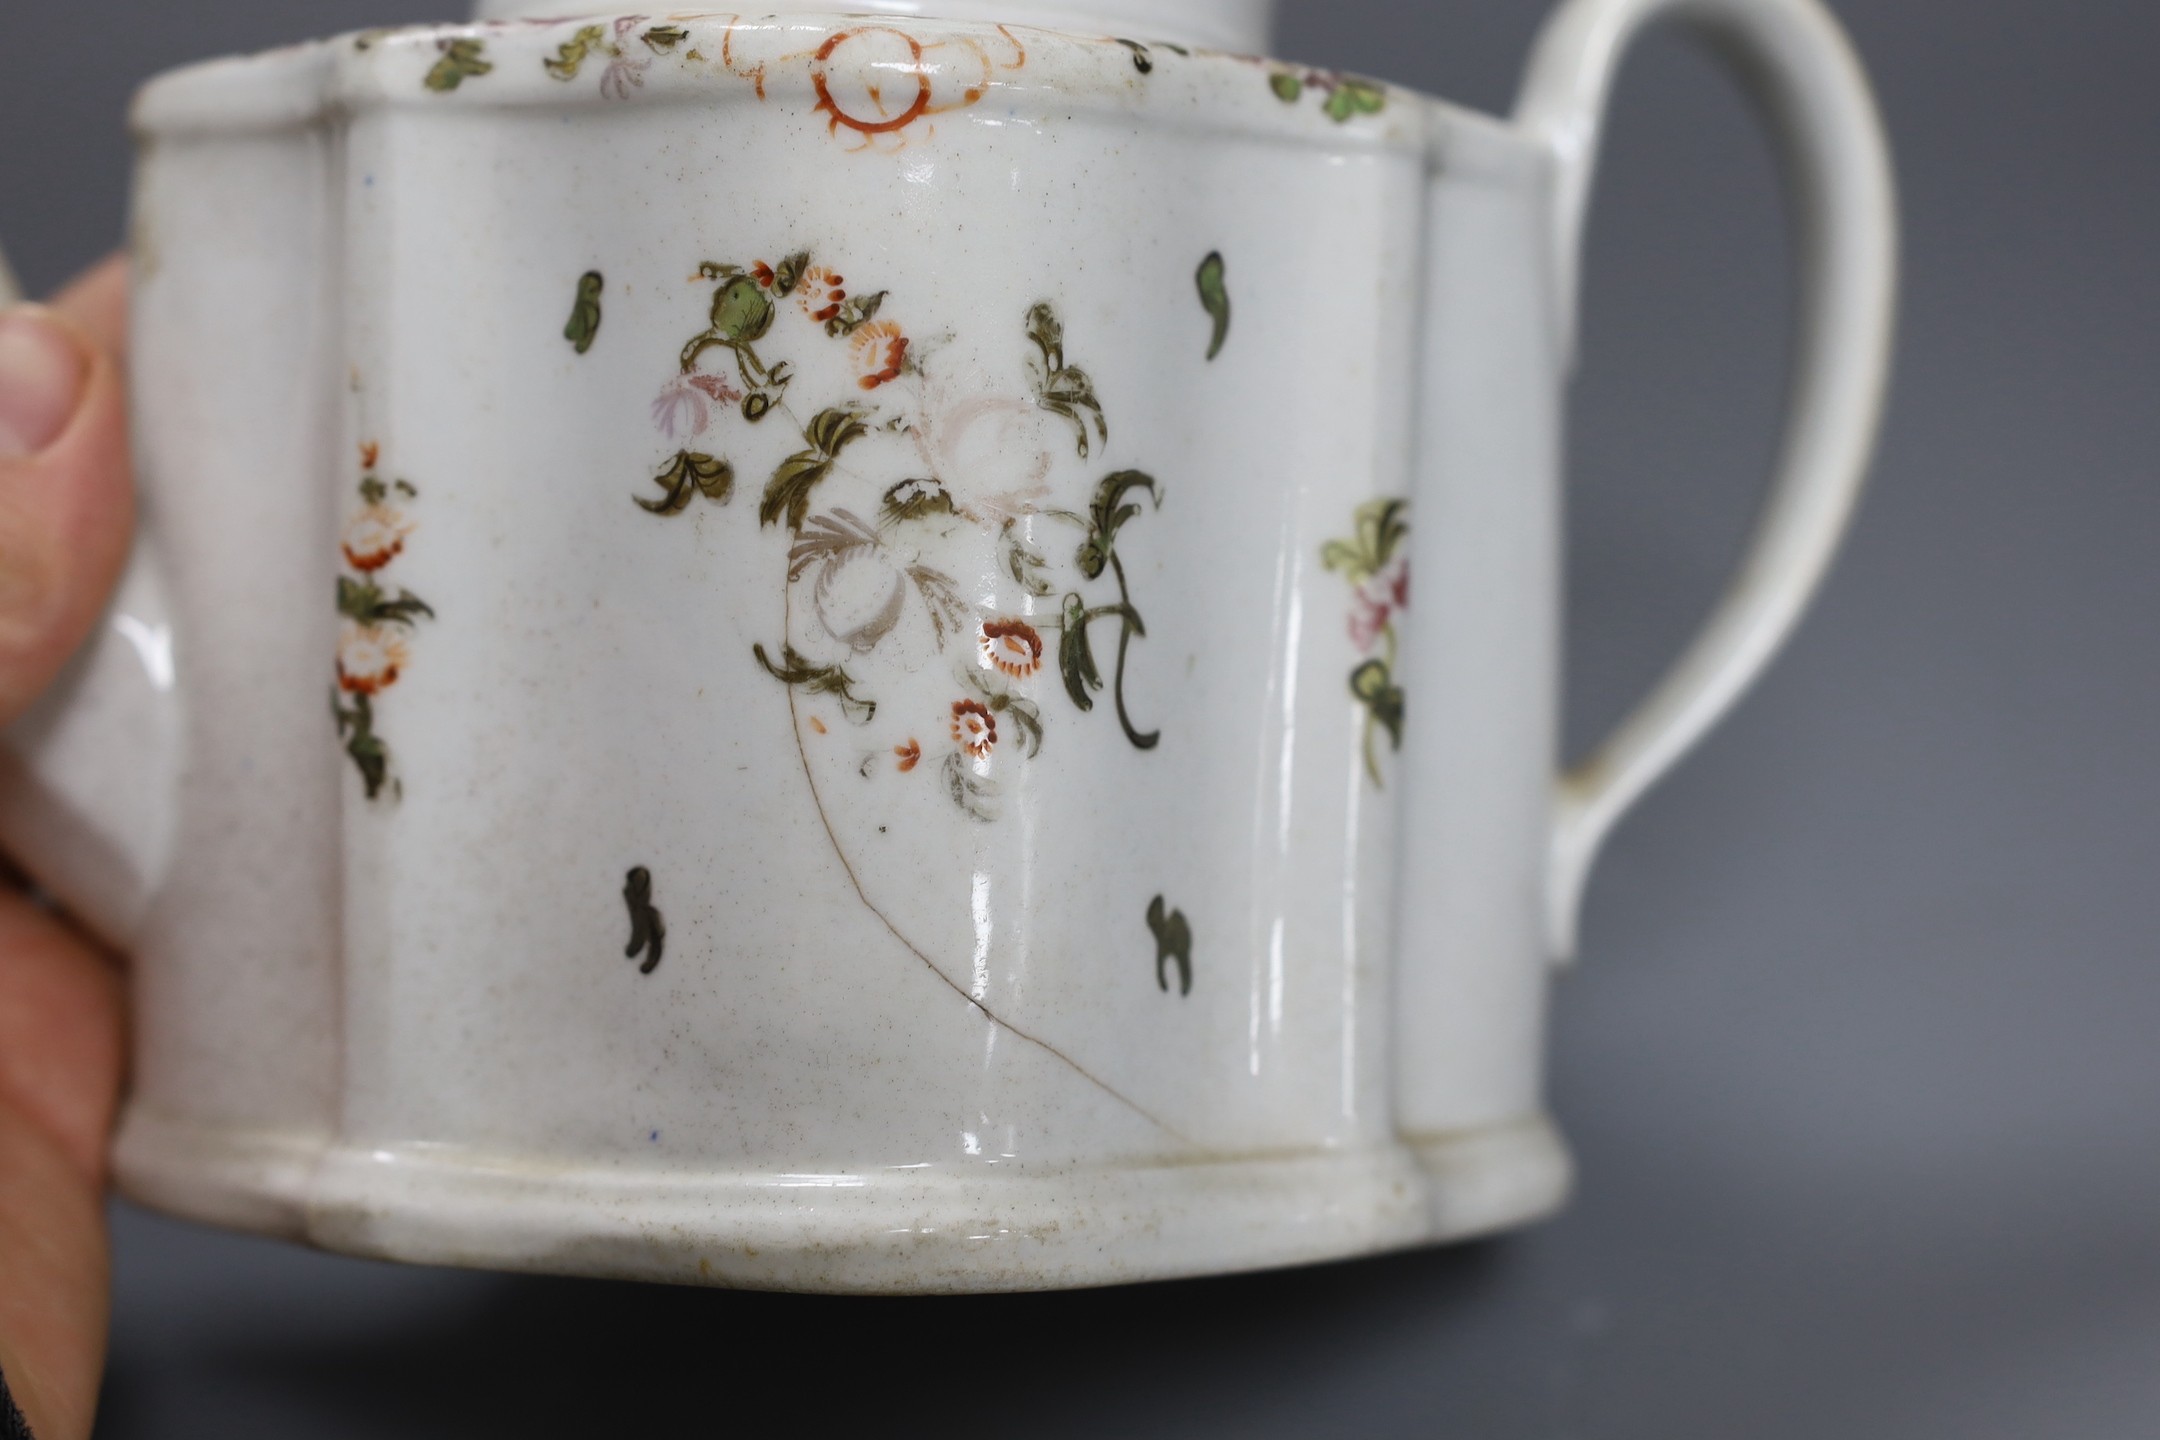 A New Hall type teapot and a similar tea bowl and saucer, teapot 15 cms high